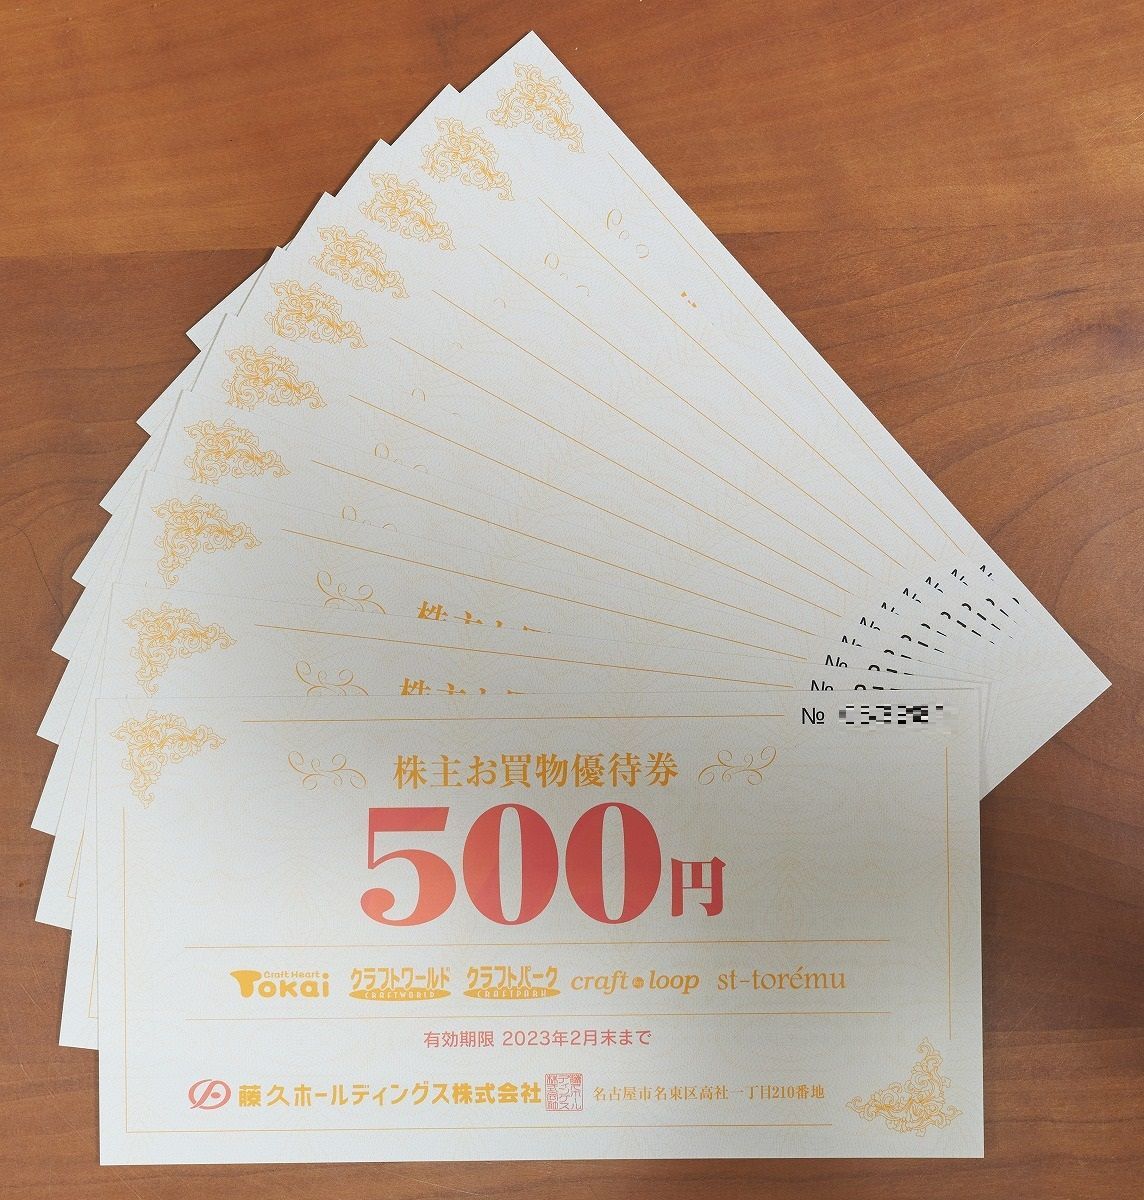 藤久HD 株主優待 5000円 有効期限2023/2/28 クラフトトーカイ くまちゃんチケット メルカリ